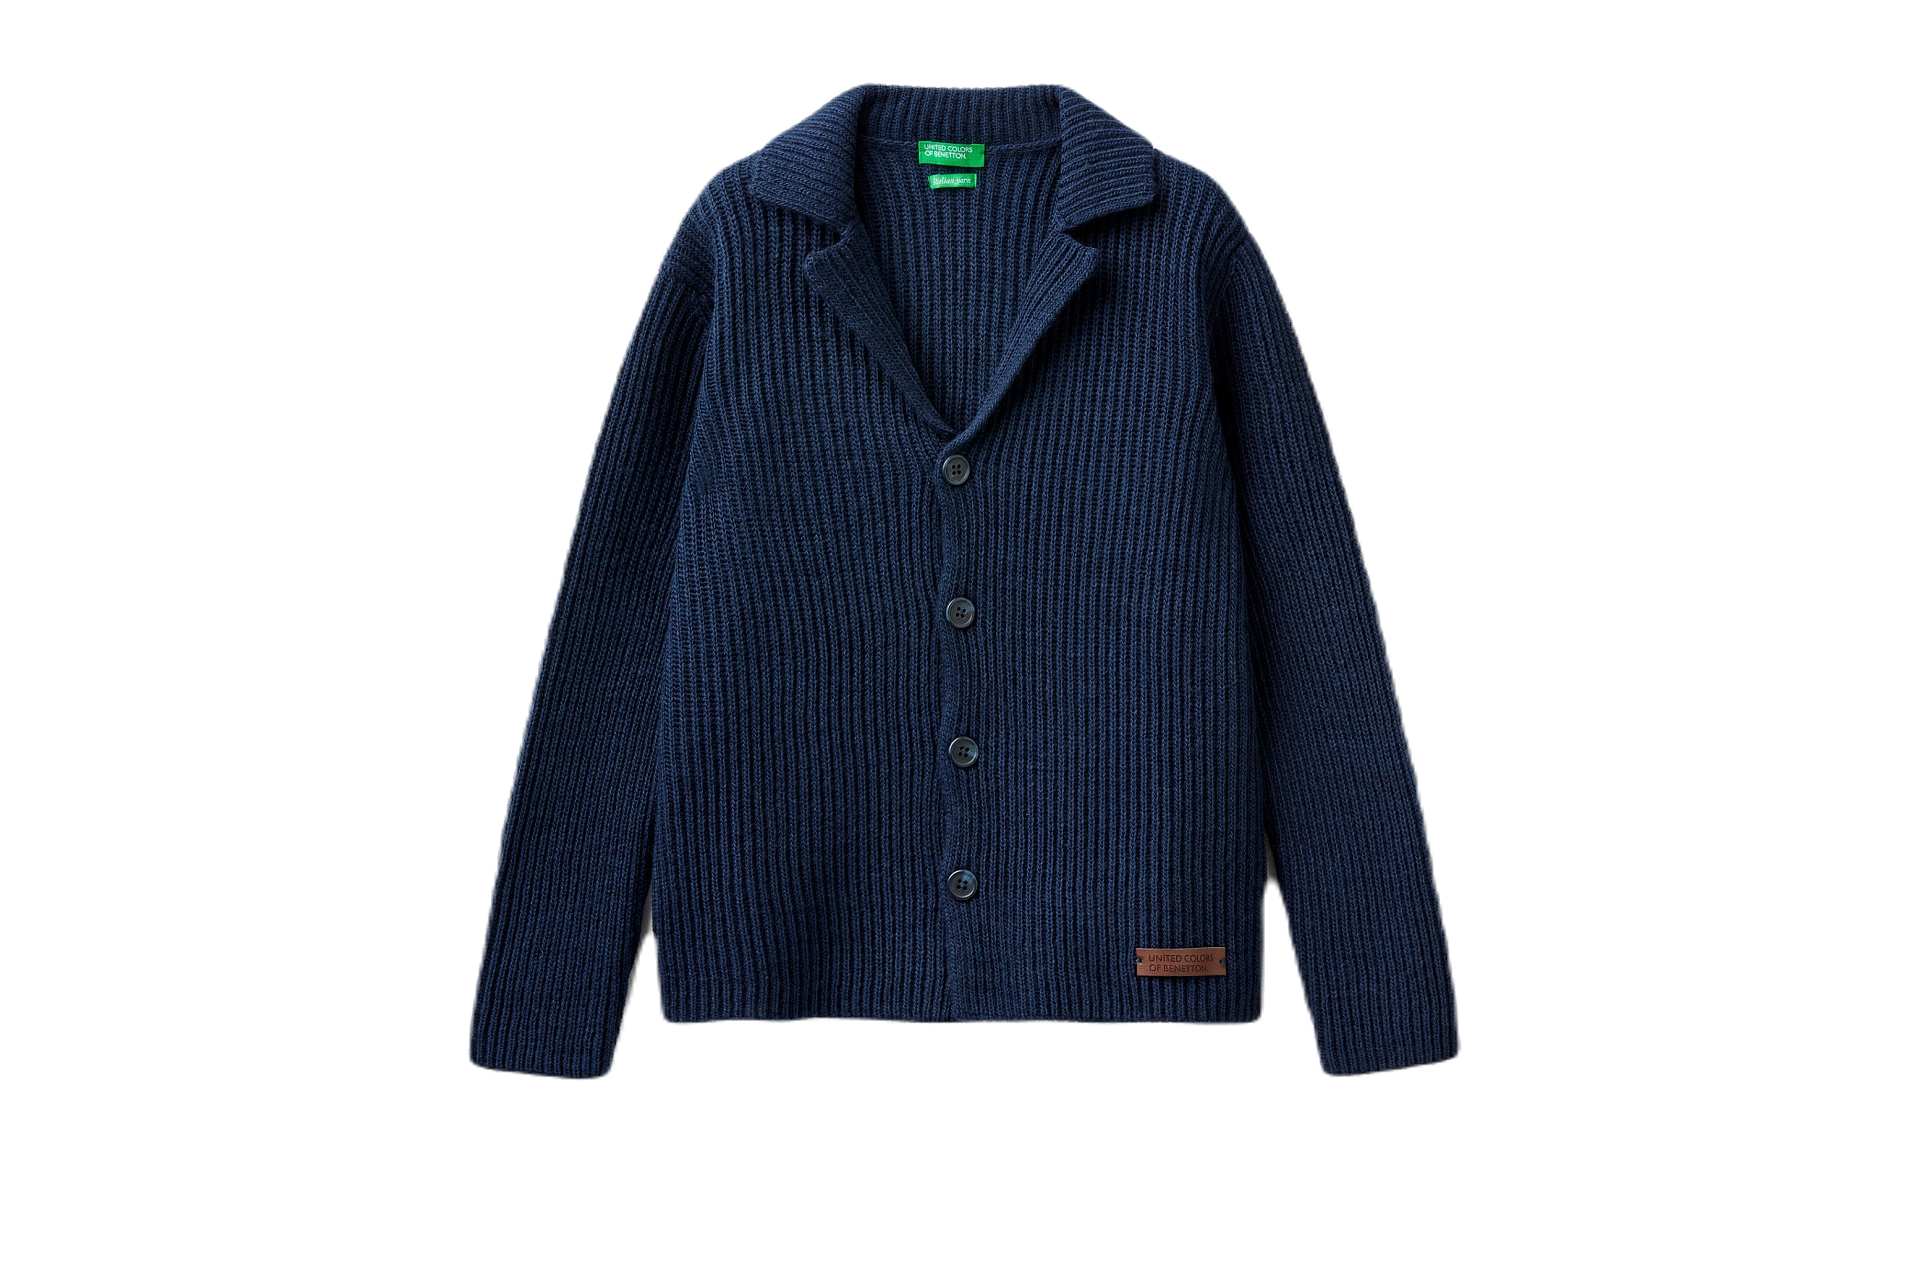 Трикотажный пиджак, 4599 руб. (Benetton)